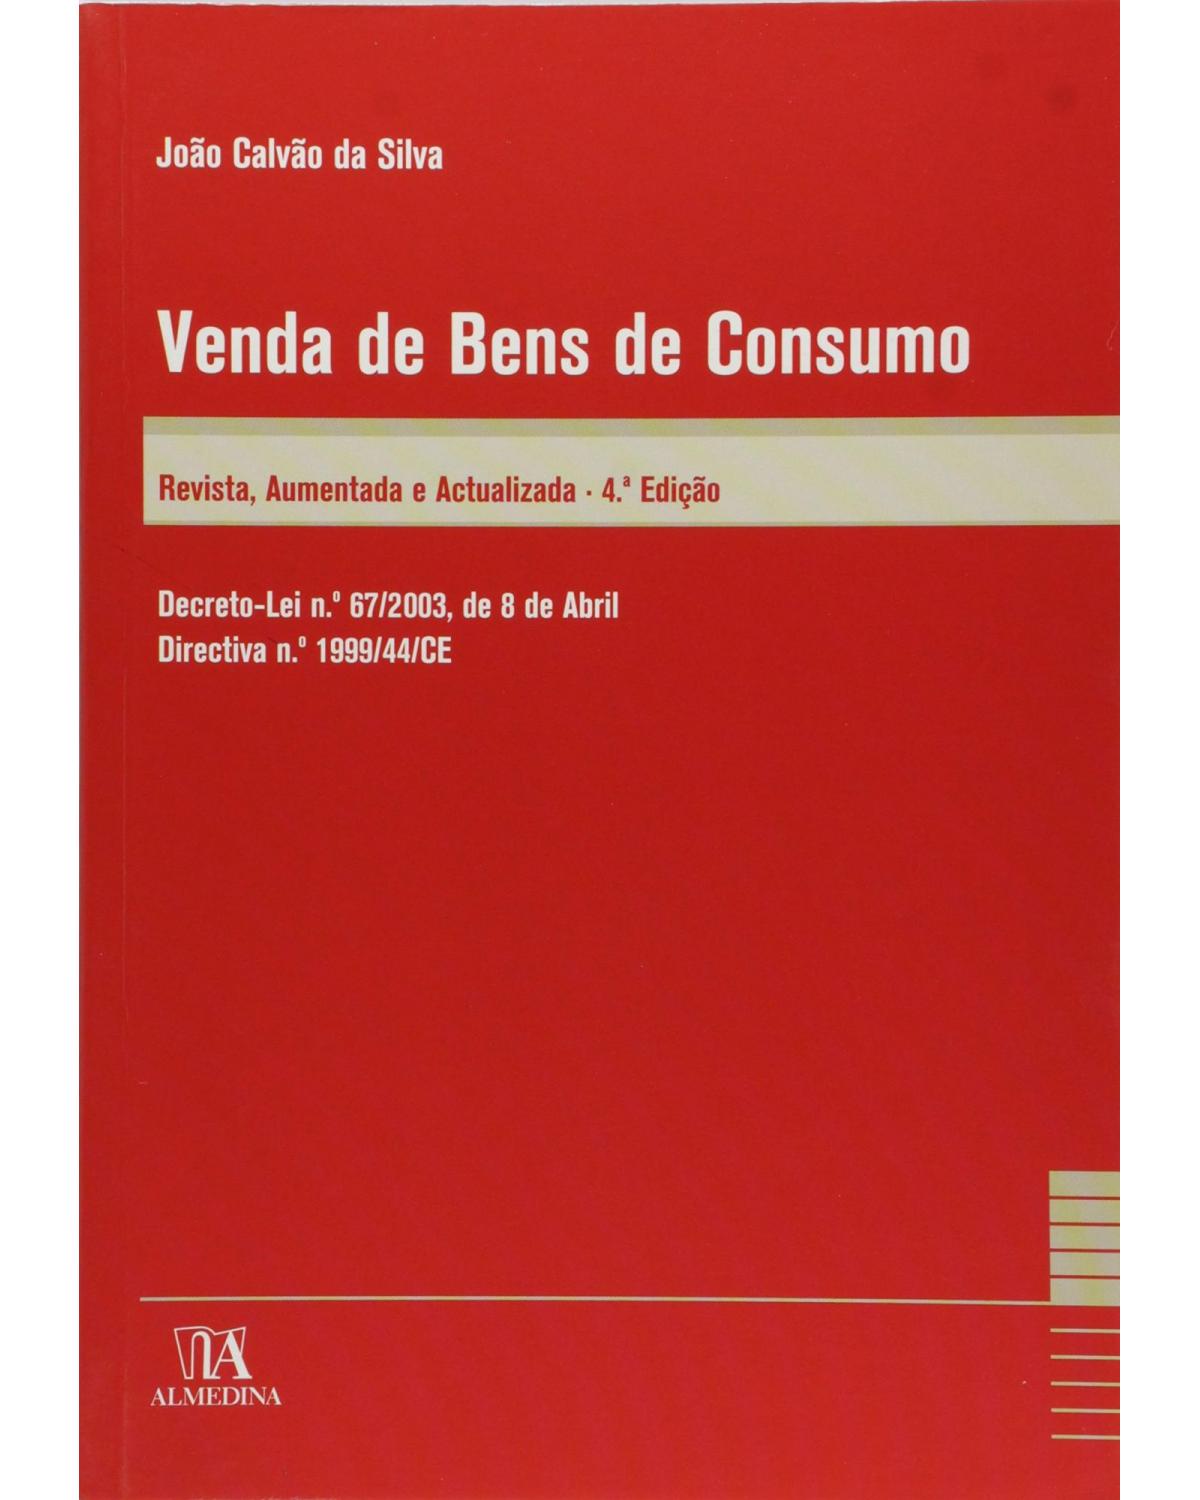 Venda de bens de consumo: decreto-lei n.º 67/2003, de 8 de abril - Directiva n.º 1999/44/CE - 4ª Edição | 2010